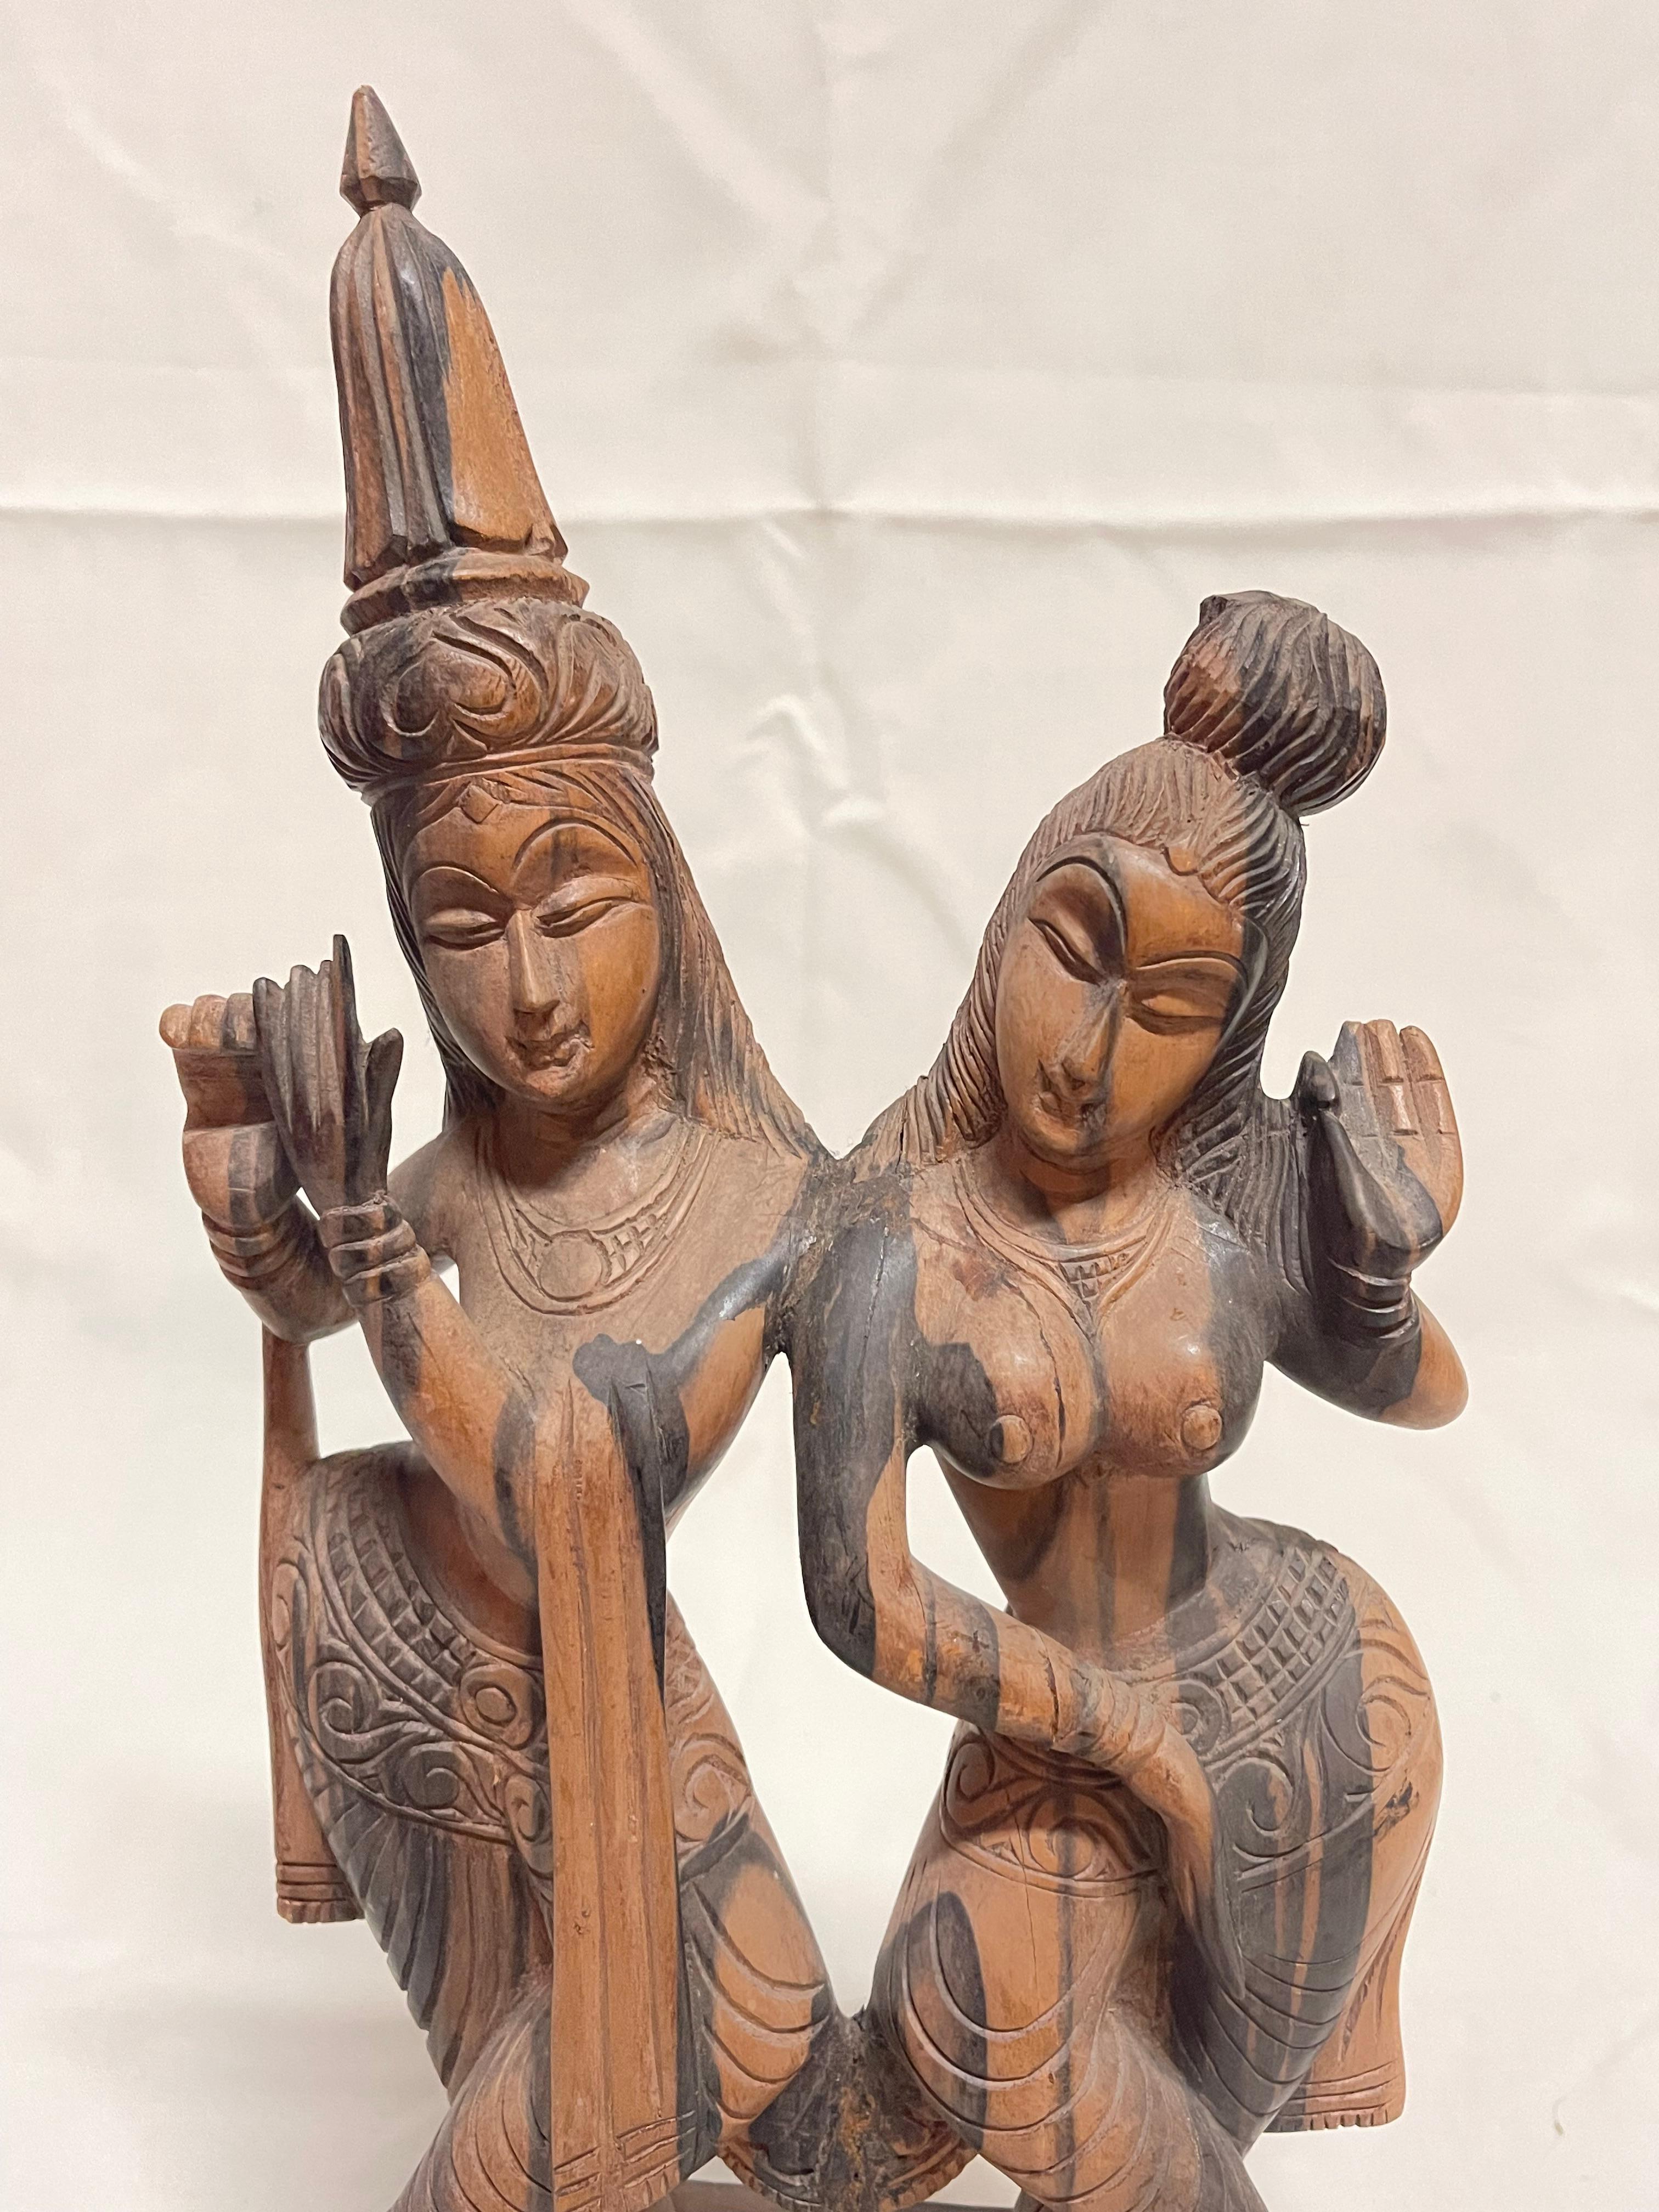 Magnifique sculpture en bois hindoue - Collection privée Domenico Rugiano